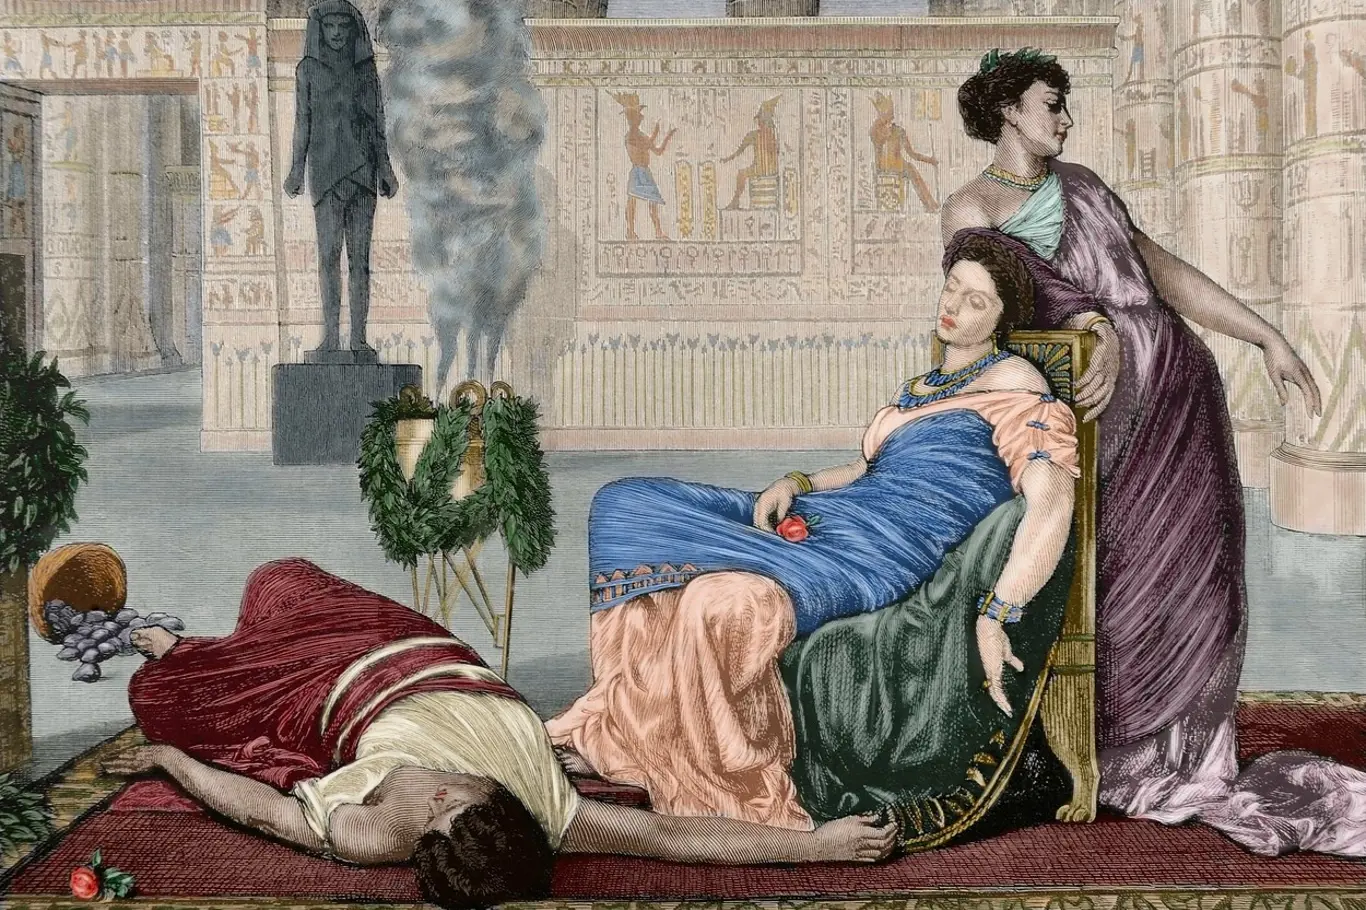 Smrt královny Kleopatry